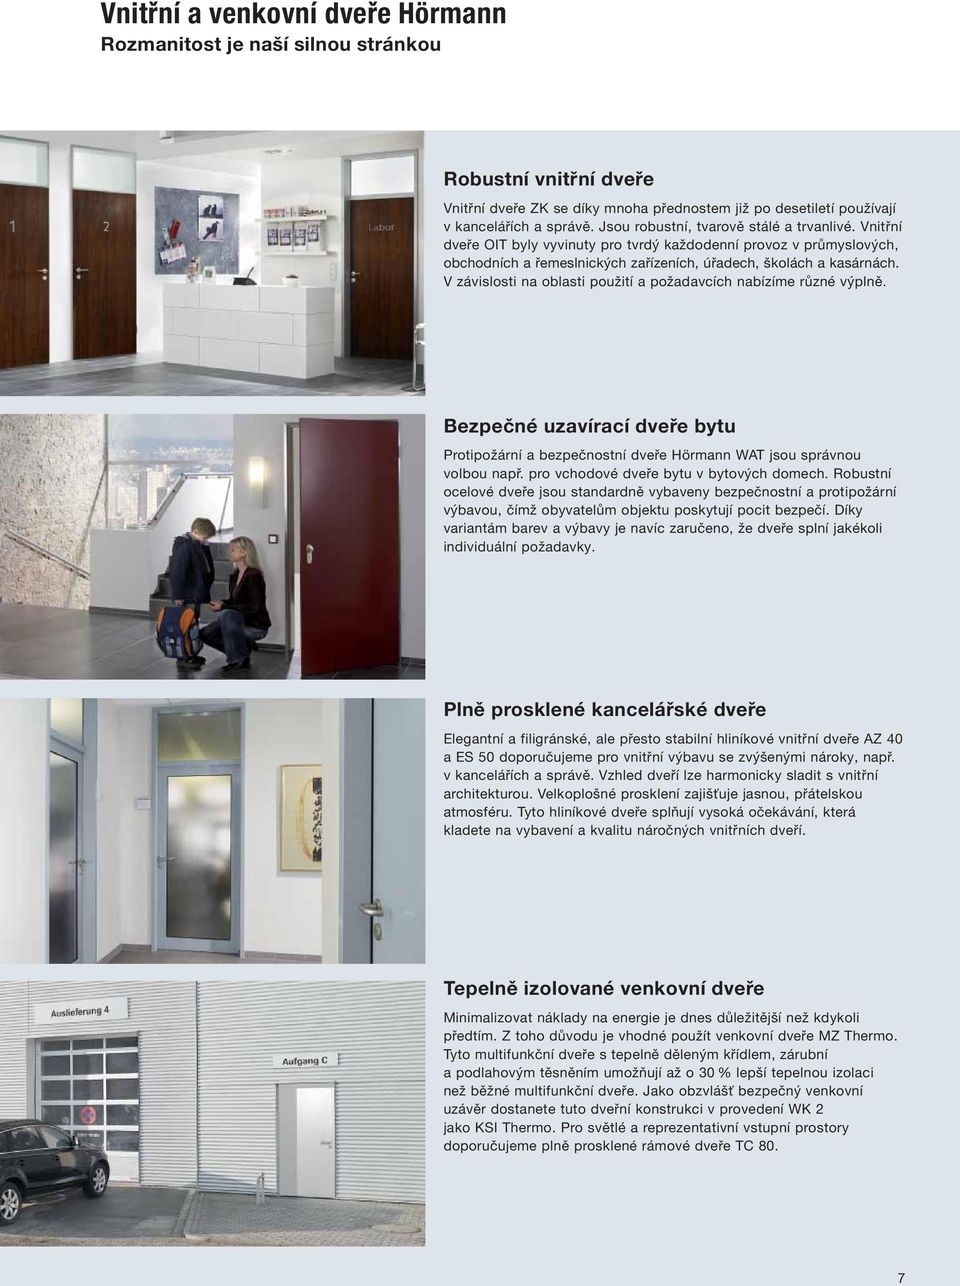 V závislosti na oblasti použití a požadavcích nabízíme různé výplně. Bezpečné uzavírací dveře bytu Protipožární a bezpečnostní dveře Hörmann WAT jsou správnou volbou např.